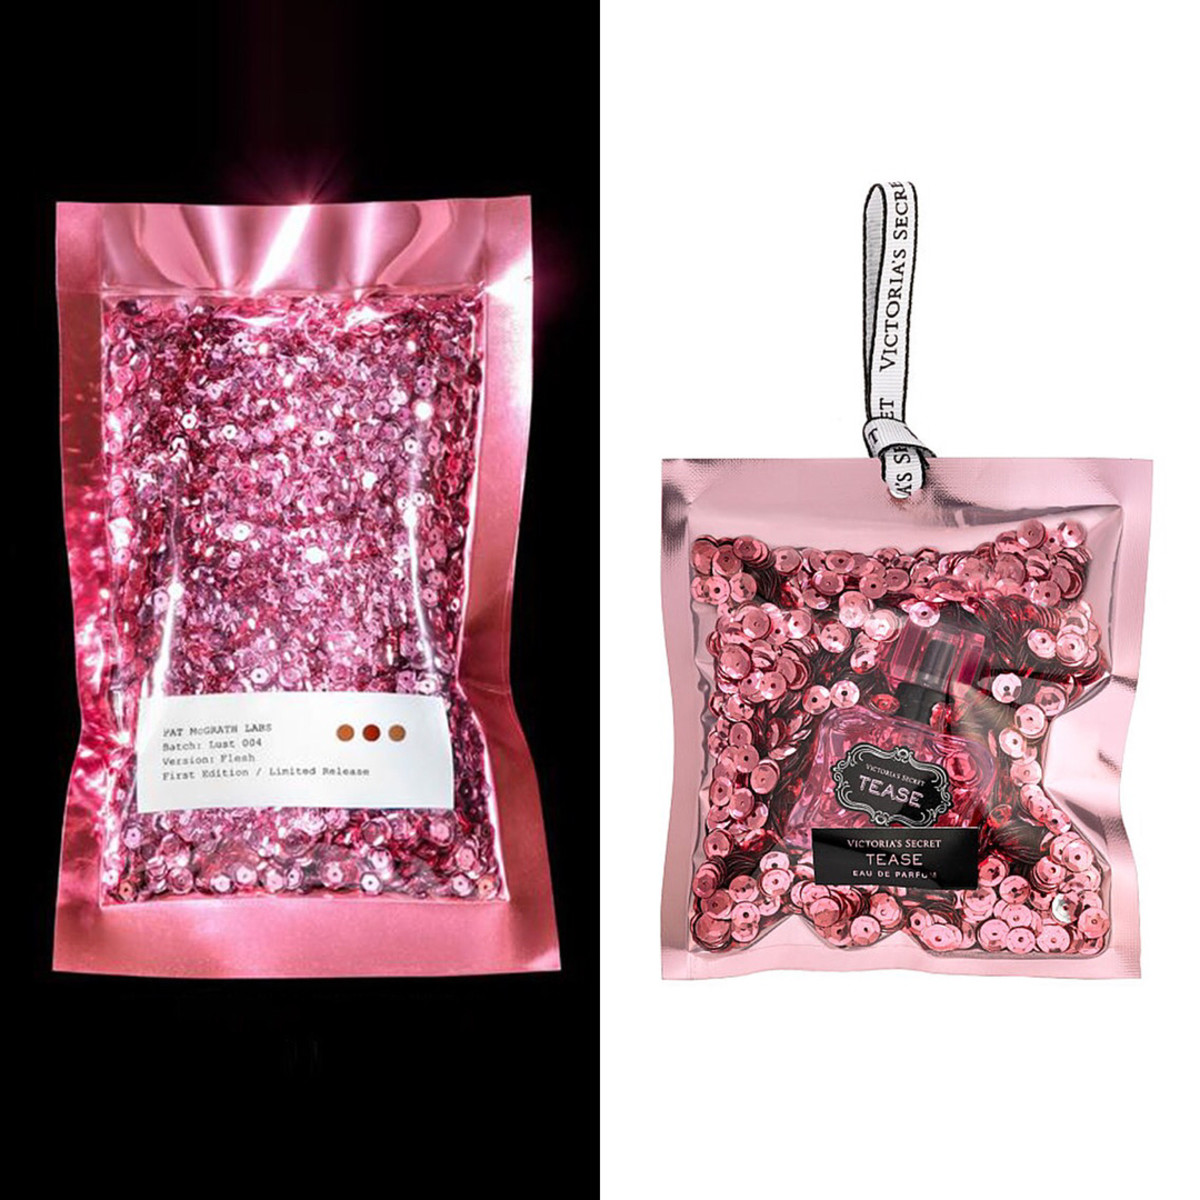 Pat McGrath Labs' packaging vs. Victoria's Secret's. Photo: @diet_prada